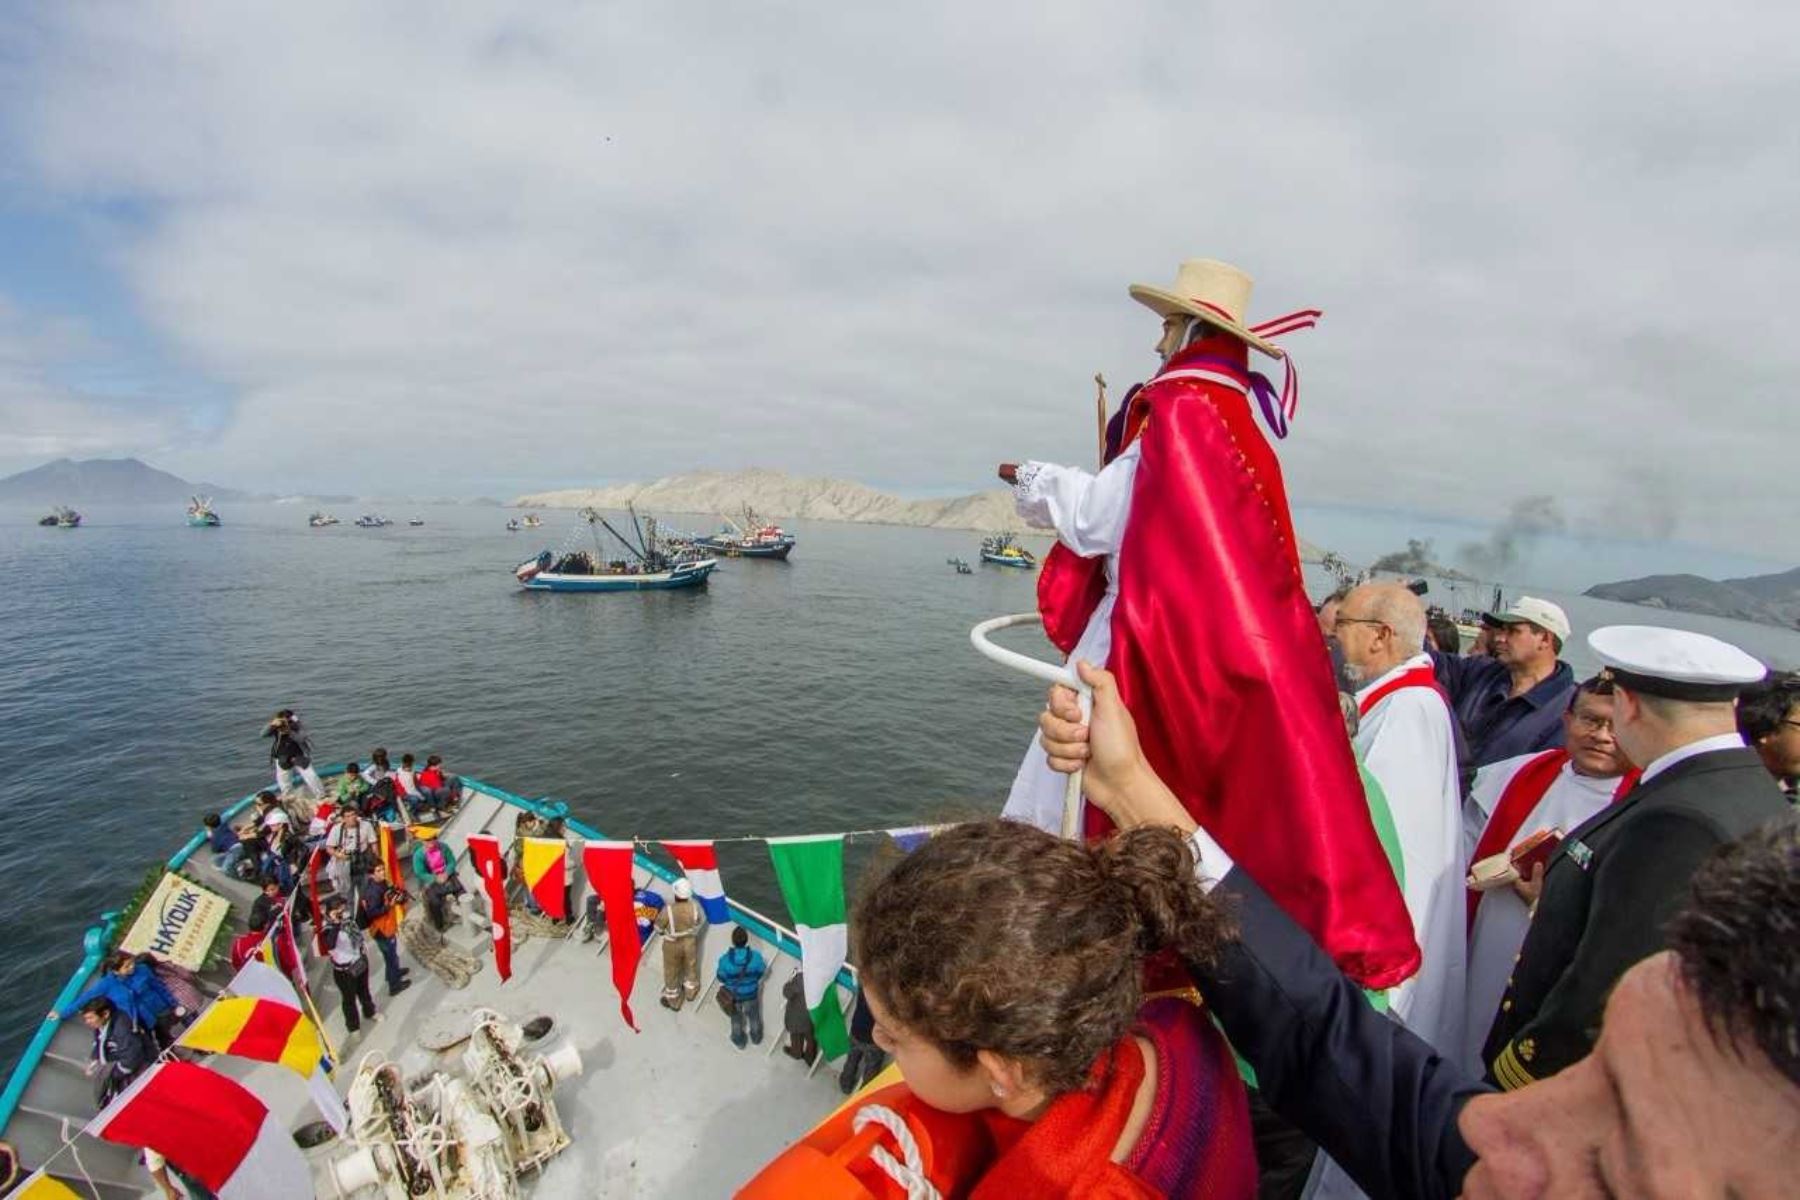 La procesión de “San Pedrito” por la bahía de Chimbote, se realiza con la presencia de la feligresía y de turistas nacionales e internacionales.